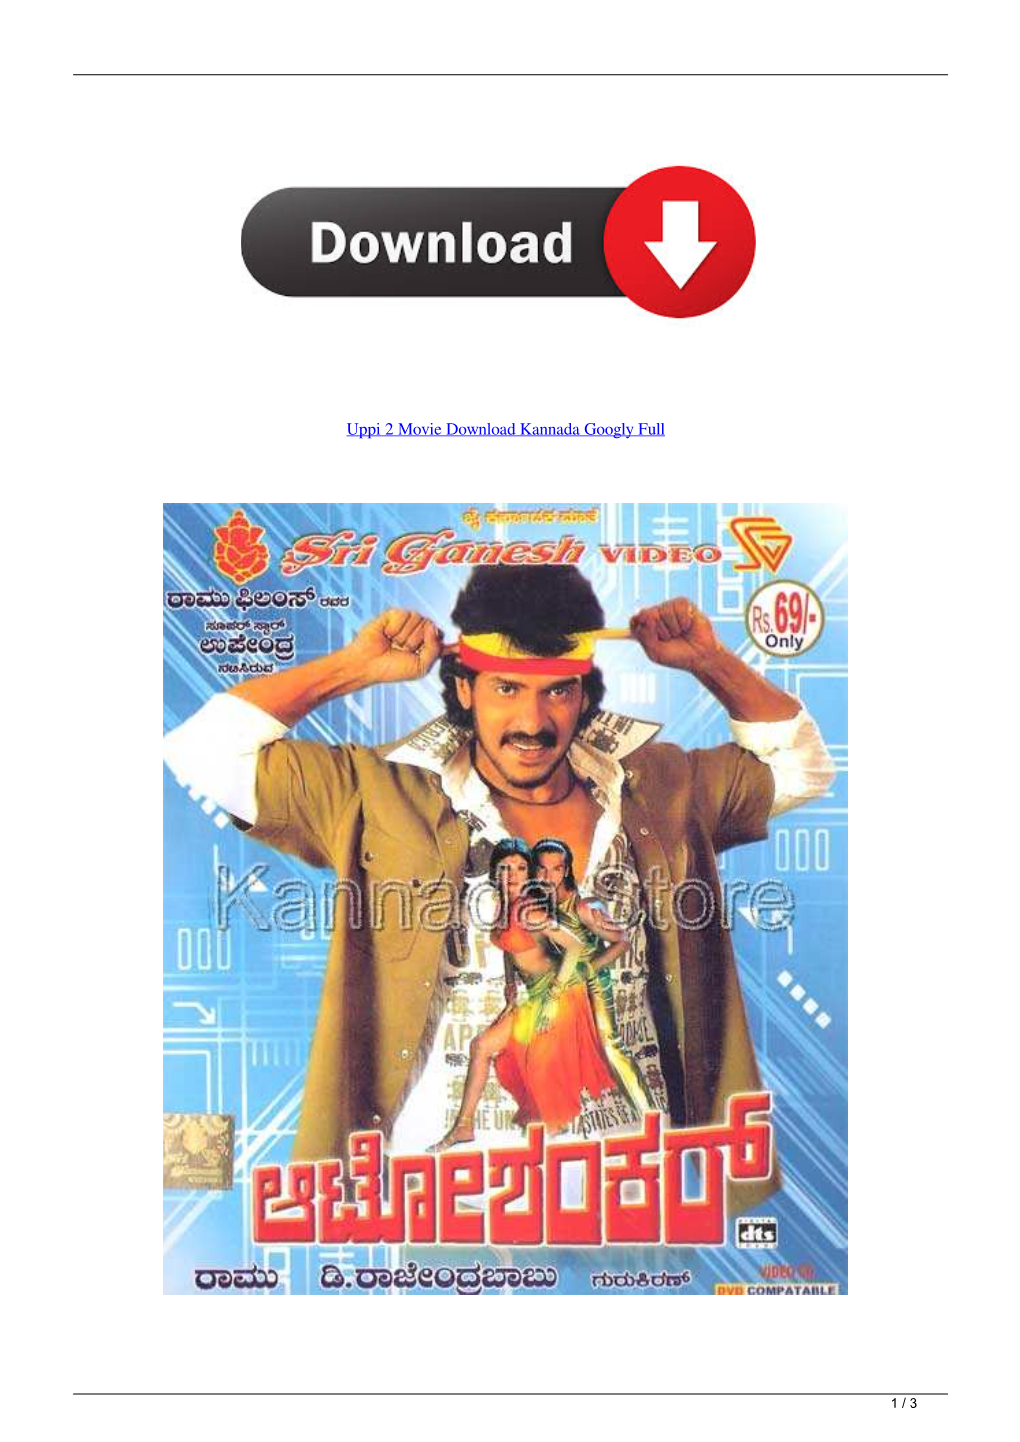 Uppi 2 Movie Download Kannada Googly Full